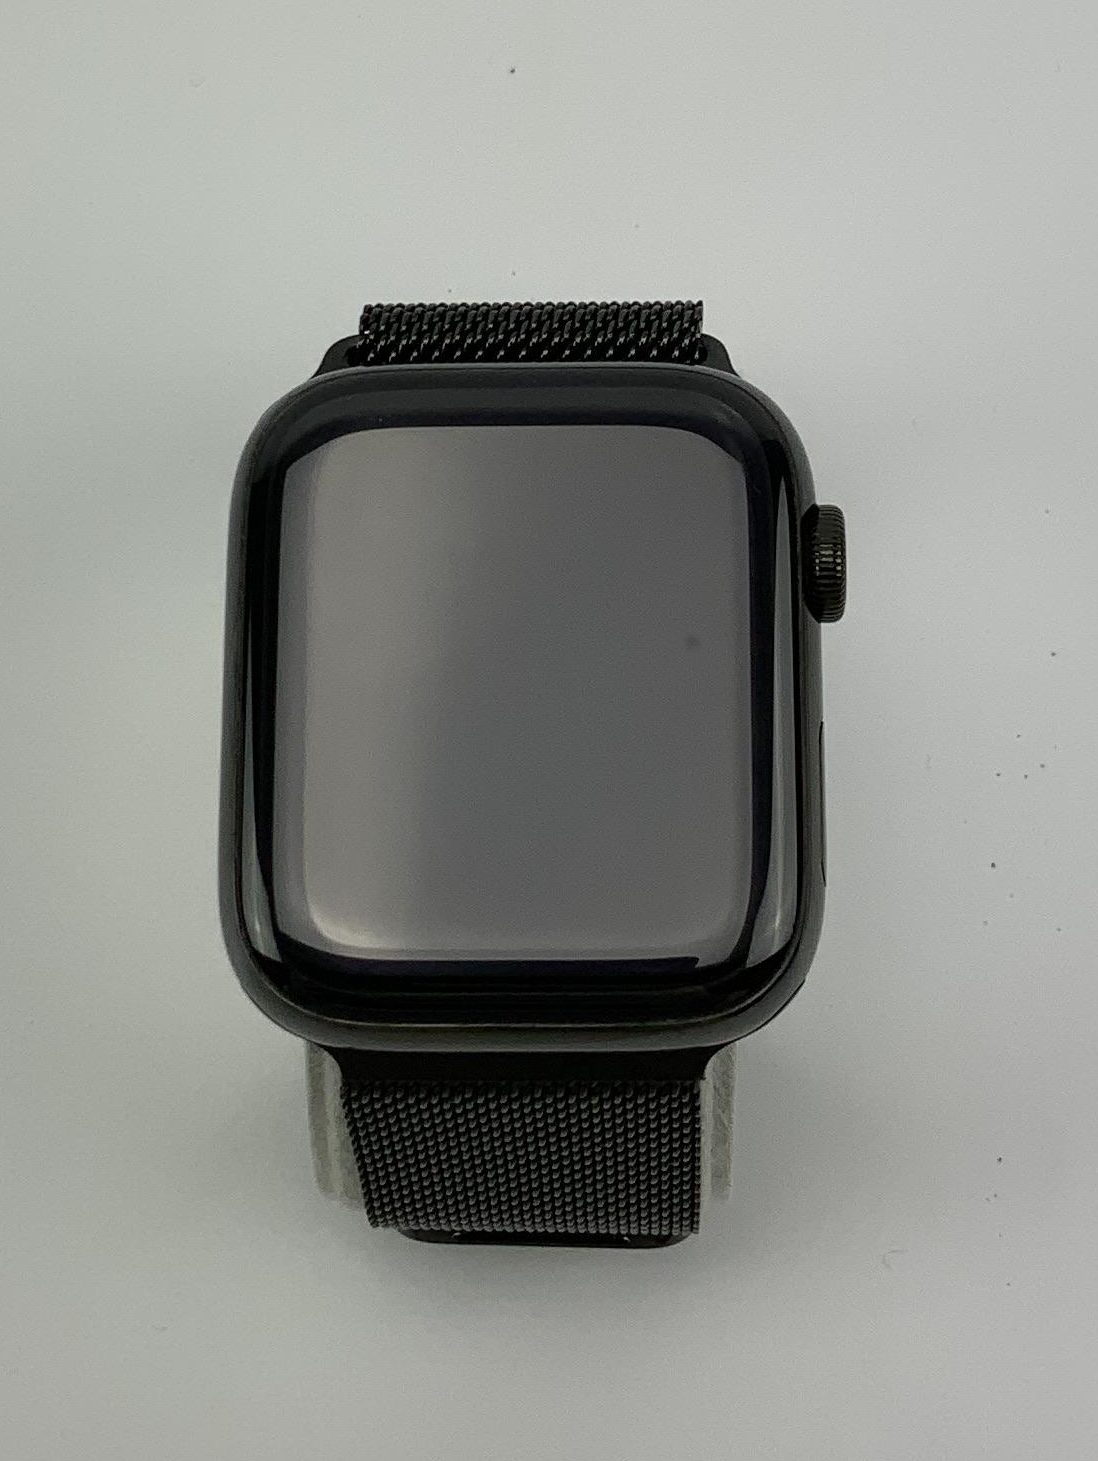 Watch Series 4 Steel Cellular (44mm), Space Black, Space Black Milanese Loop, obraz 1